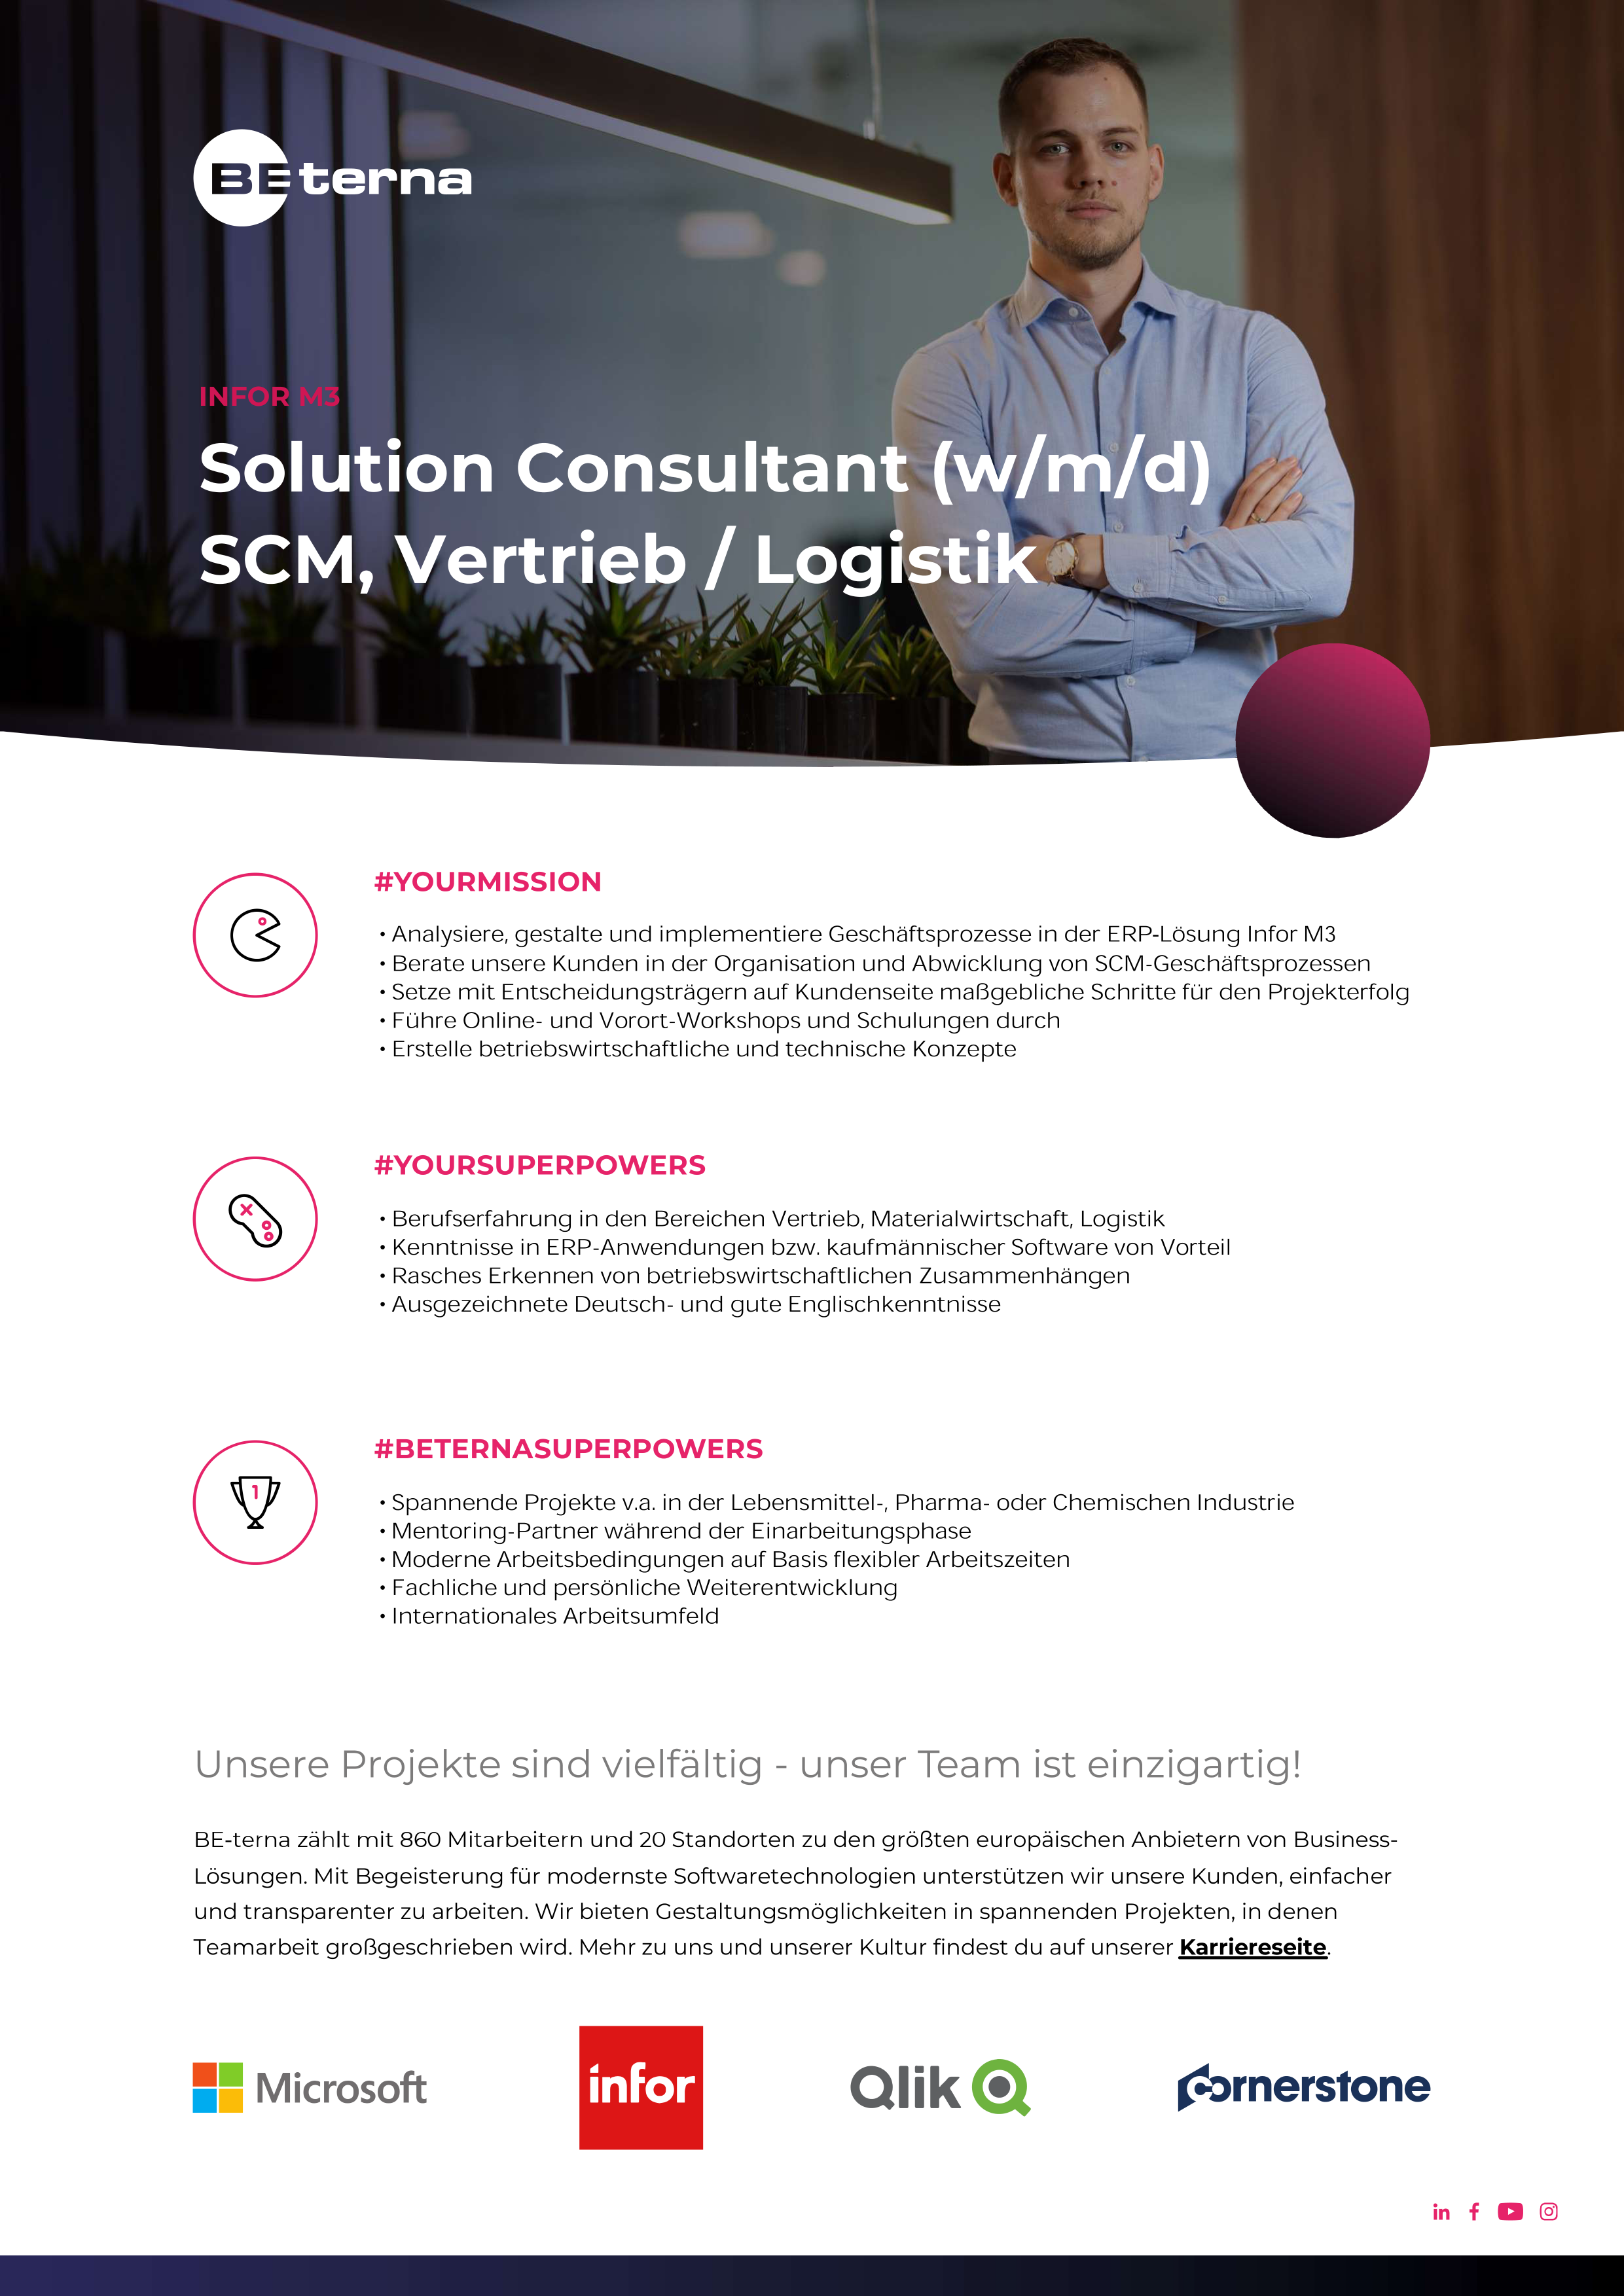 Solution Consultant (w/m/d), Supply Chain Management, Schwerpunkt Vertrieb/Logistik